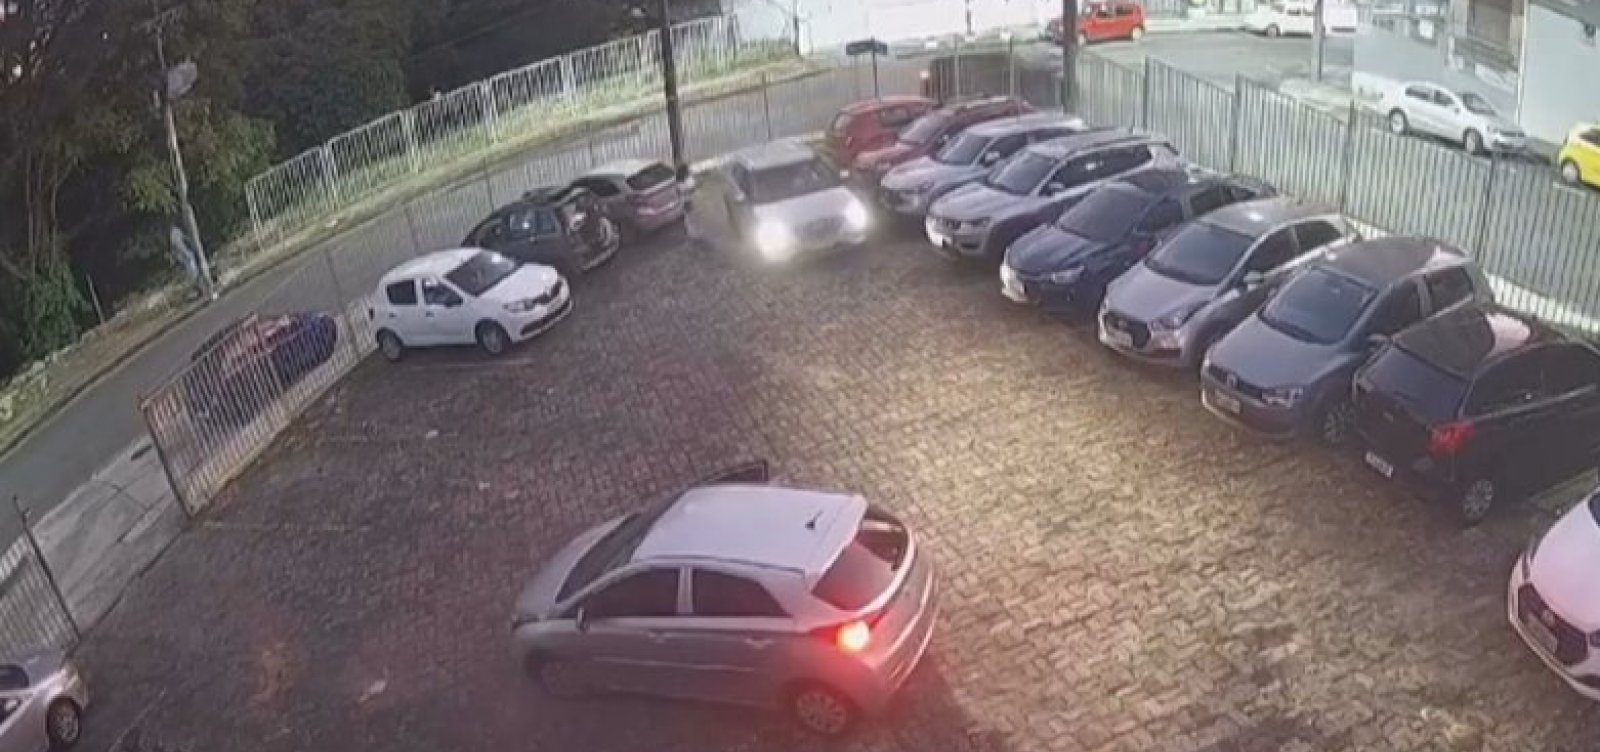 Homens são presos após roubarem carro no estacionamento da UFBA em Salvador 